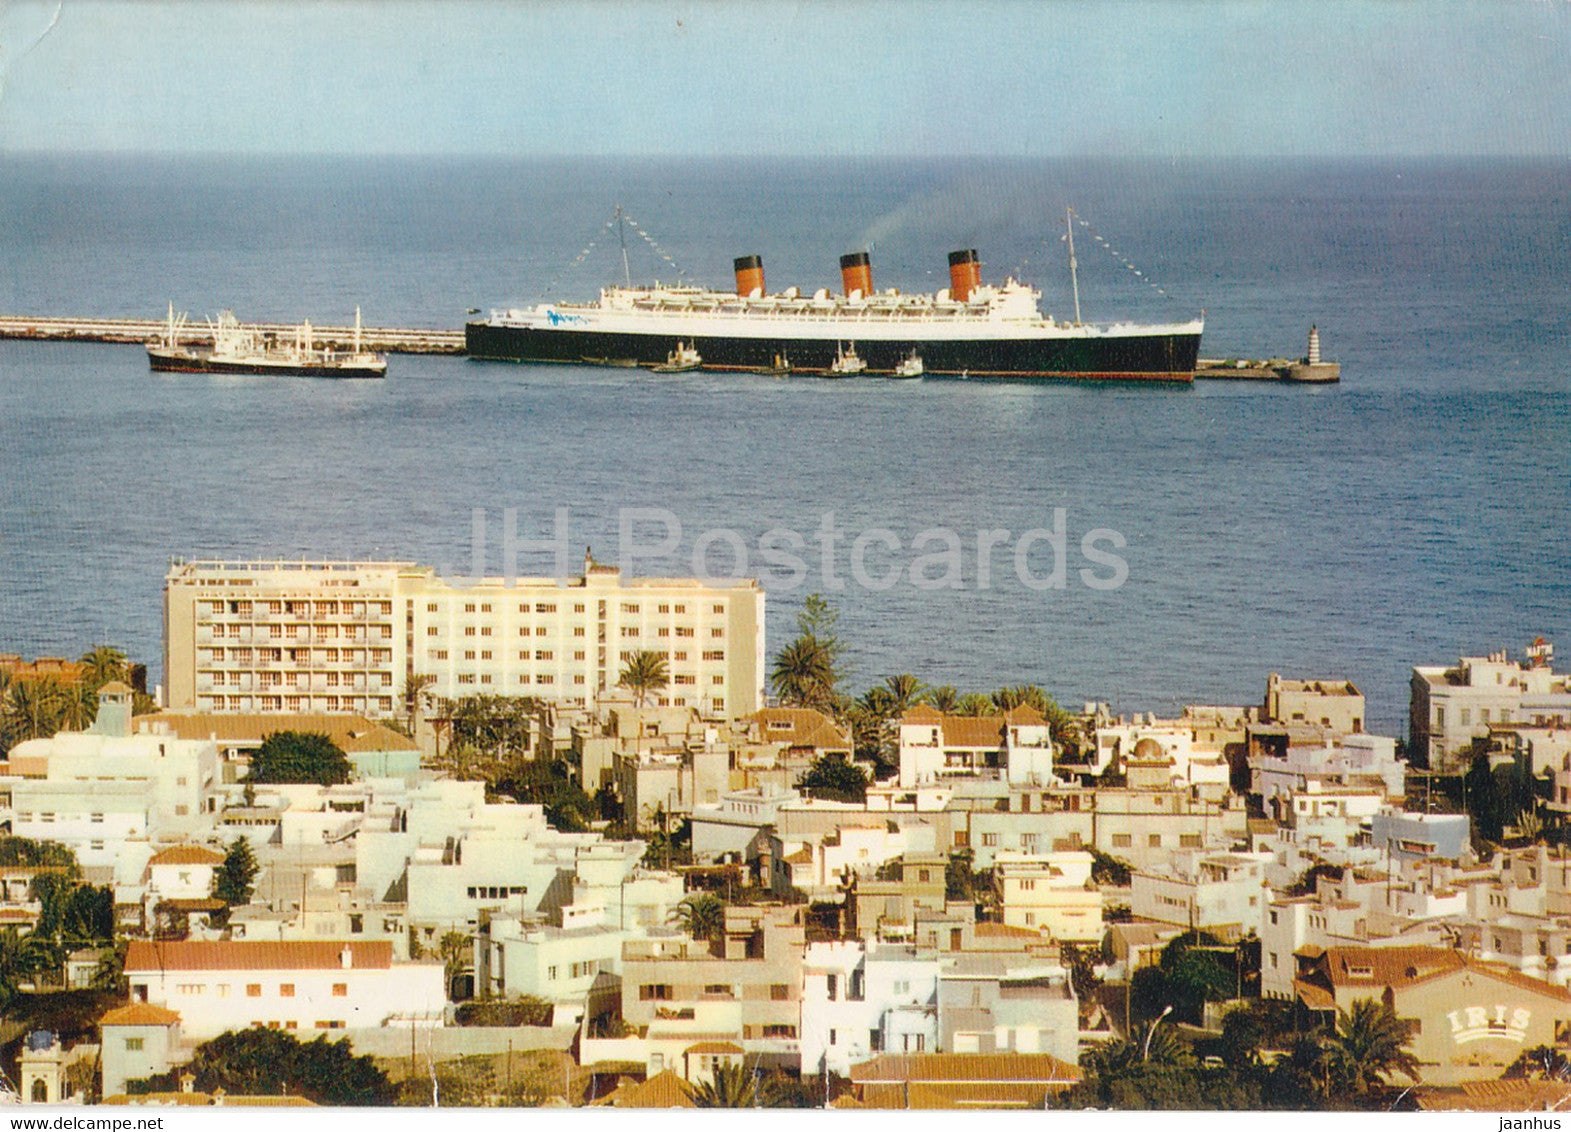 Las Palmas de Gran Canaria - hotel Metropol y Queen Mary - ship - 1965 - Spain - used - JH Postcards